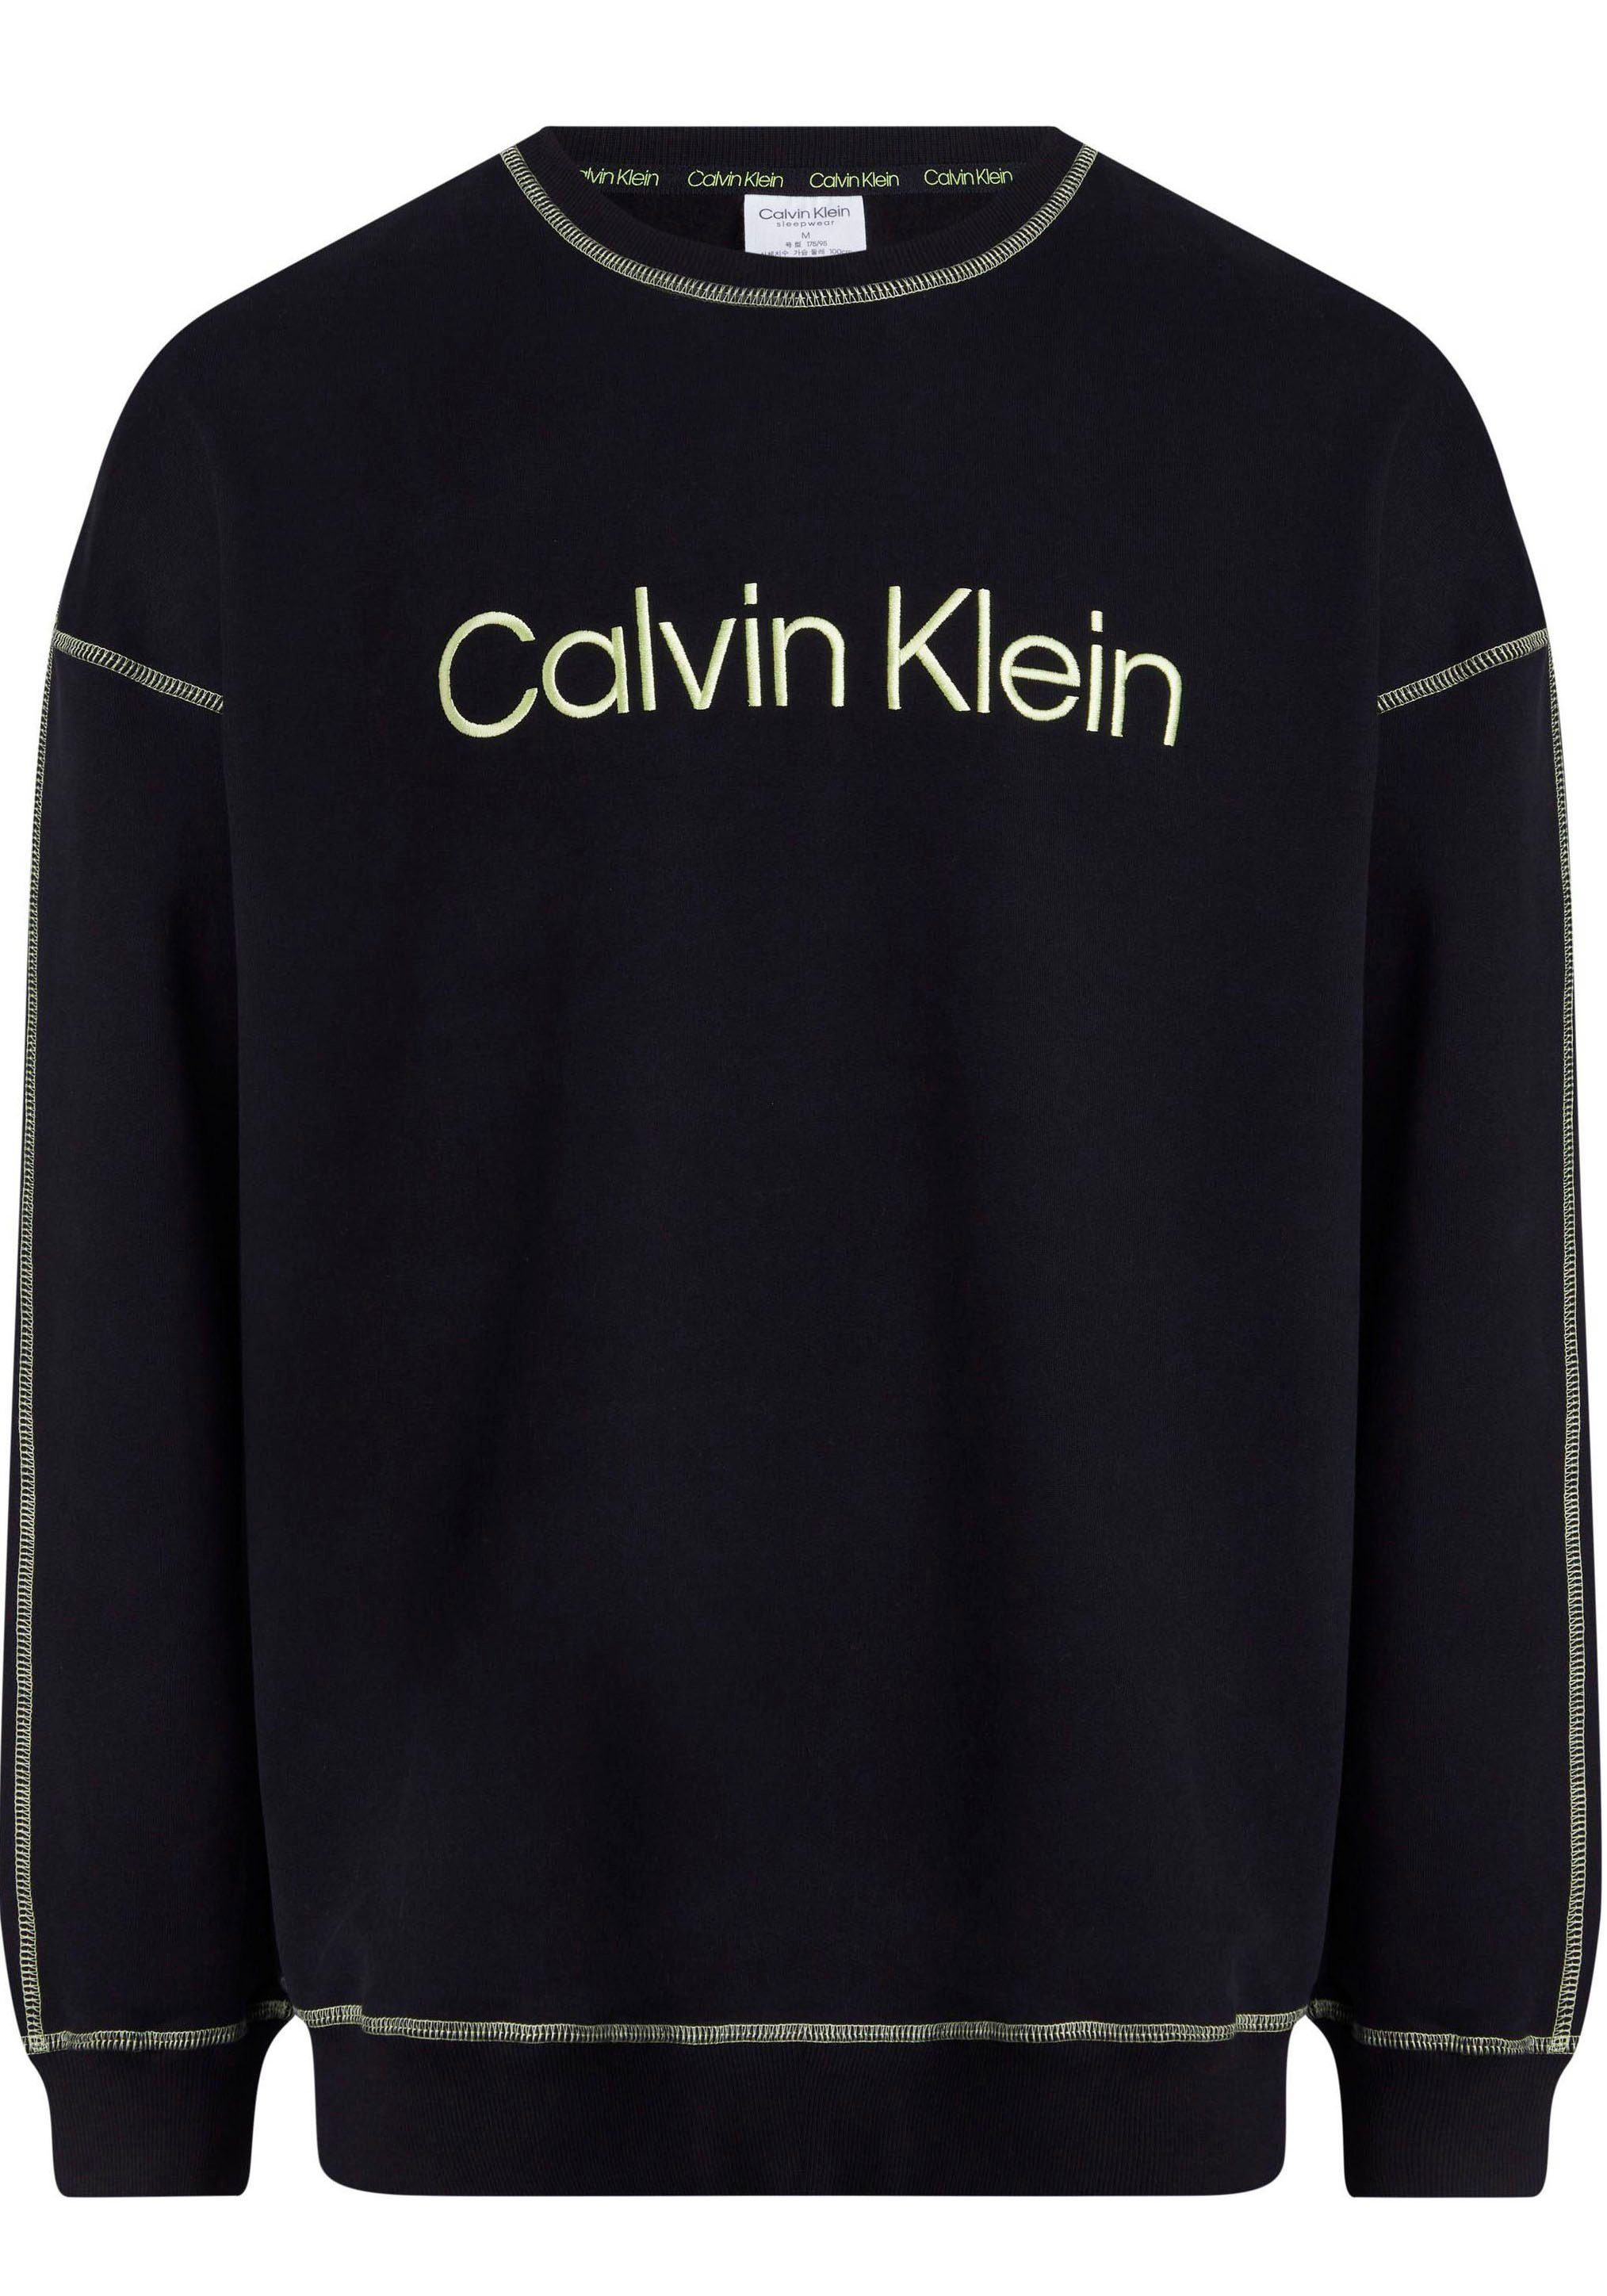 Calvin Klein L/S BLACK Underwear Sweatshirt Kontrastnähten mit SWEATSHIRT